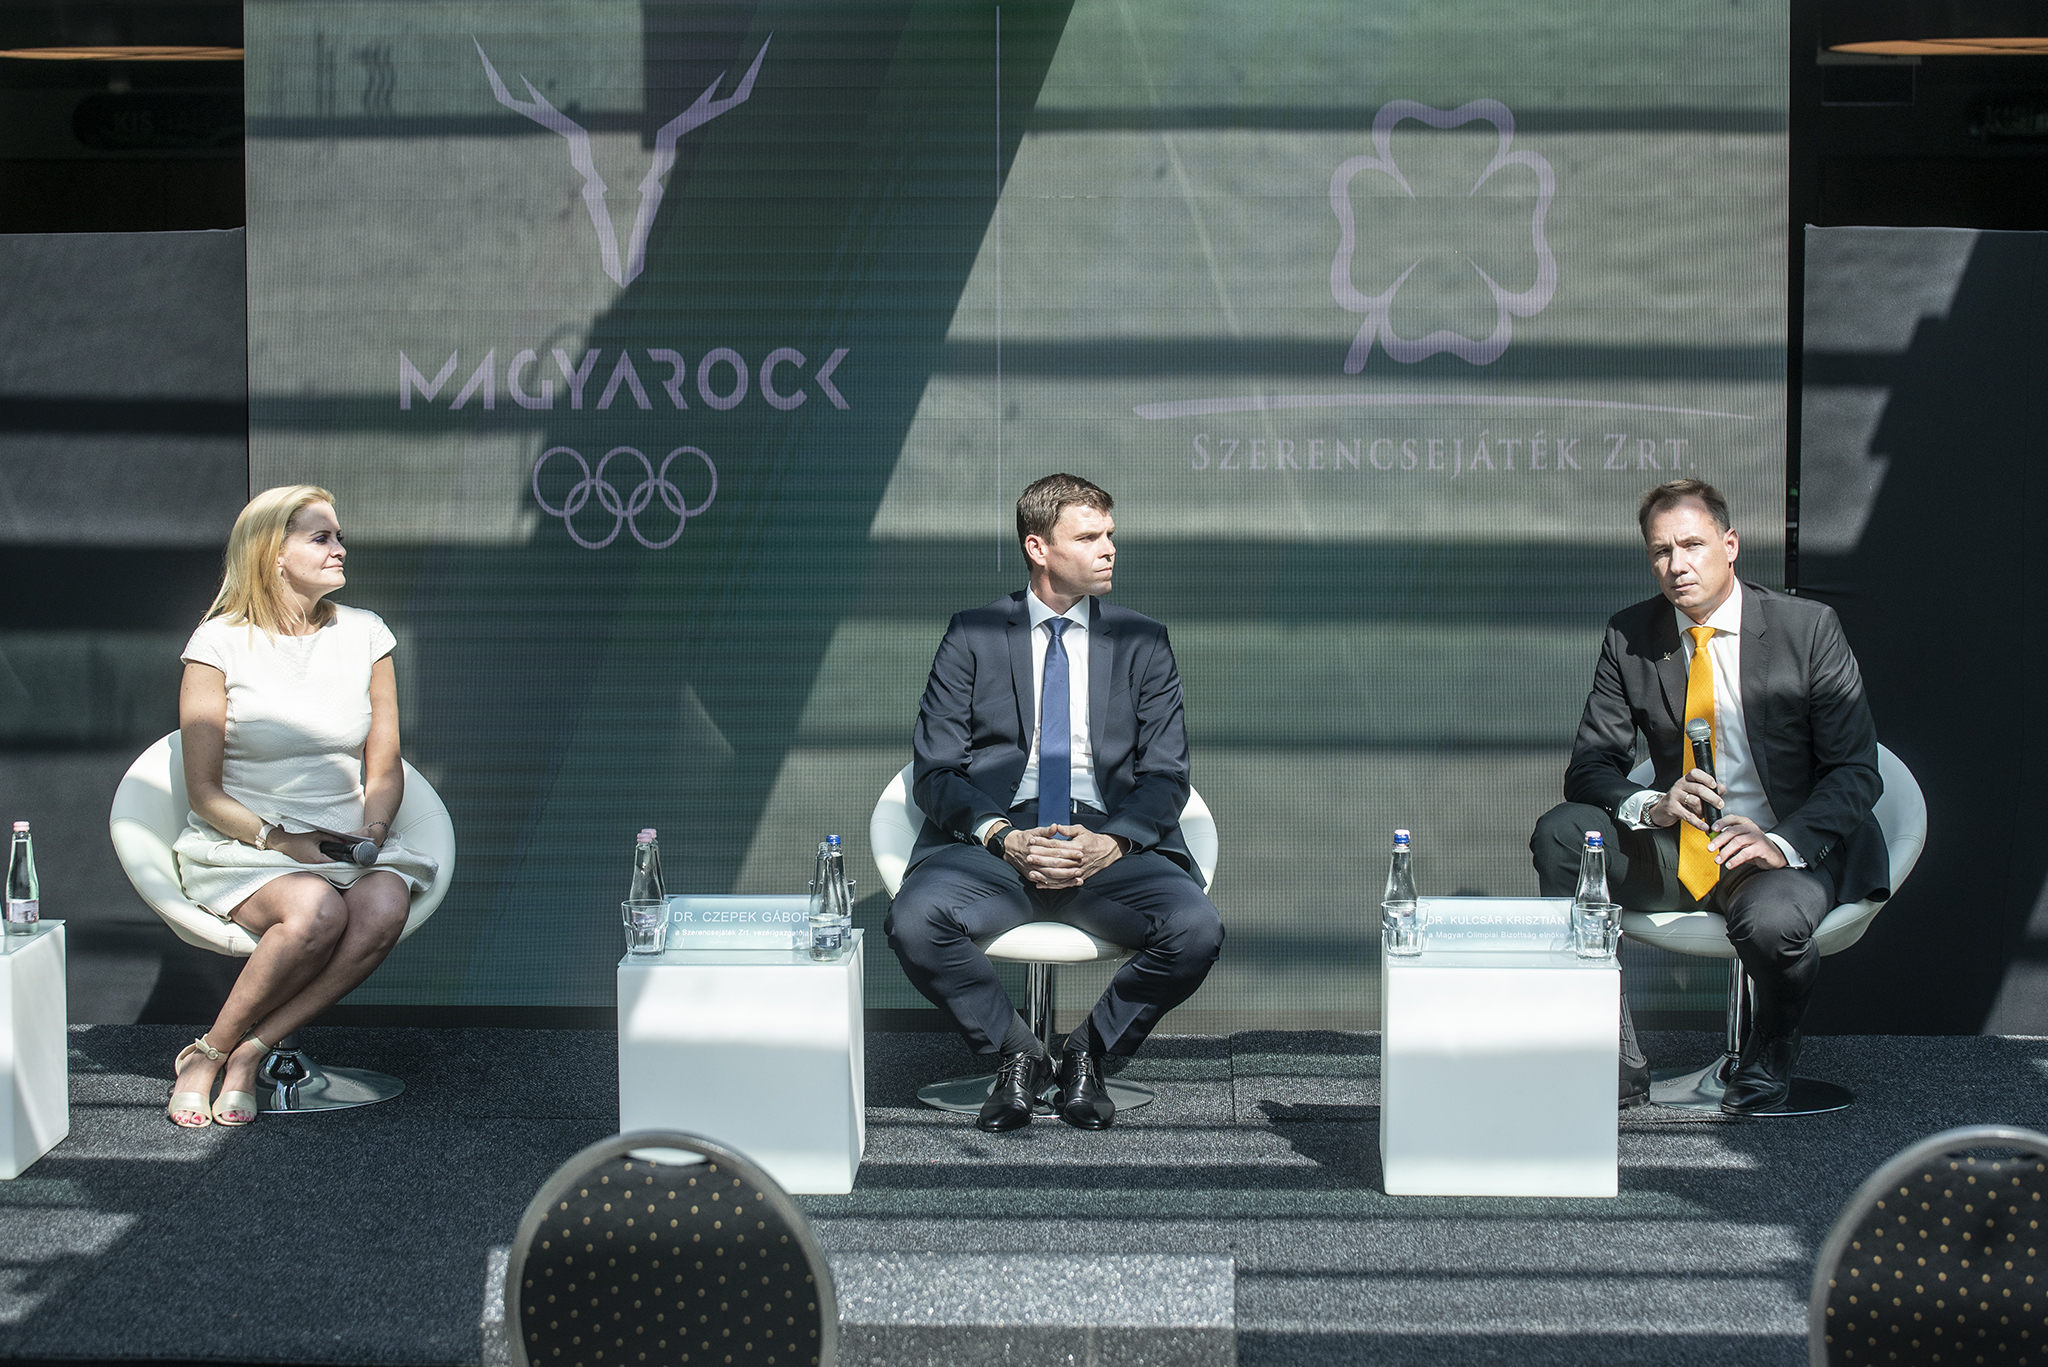 A Szerencsejáték Zrt. a Magyar Olimpiai Bizottság stratégiai partnereként támogatja az olimpiai felkészülést